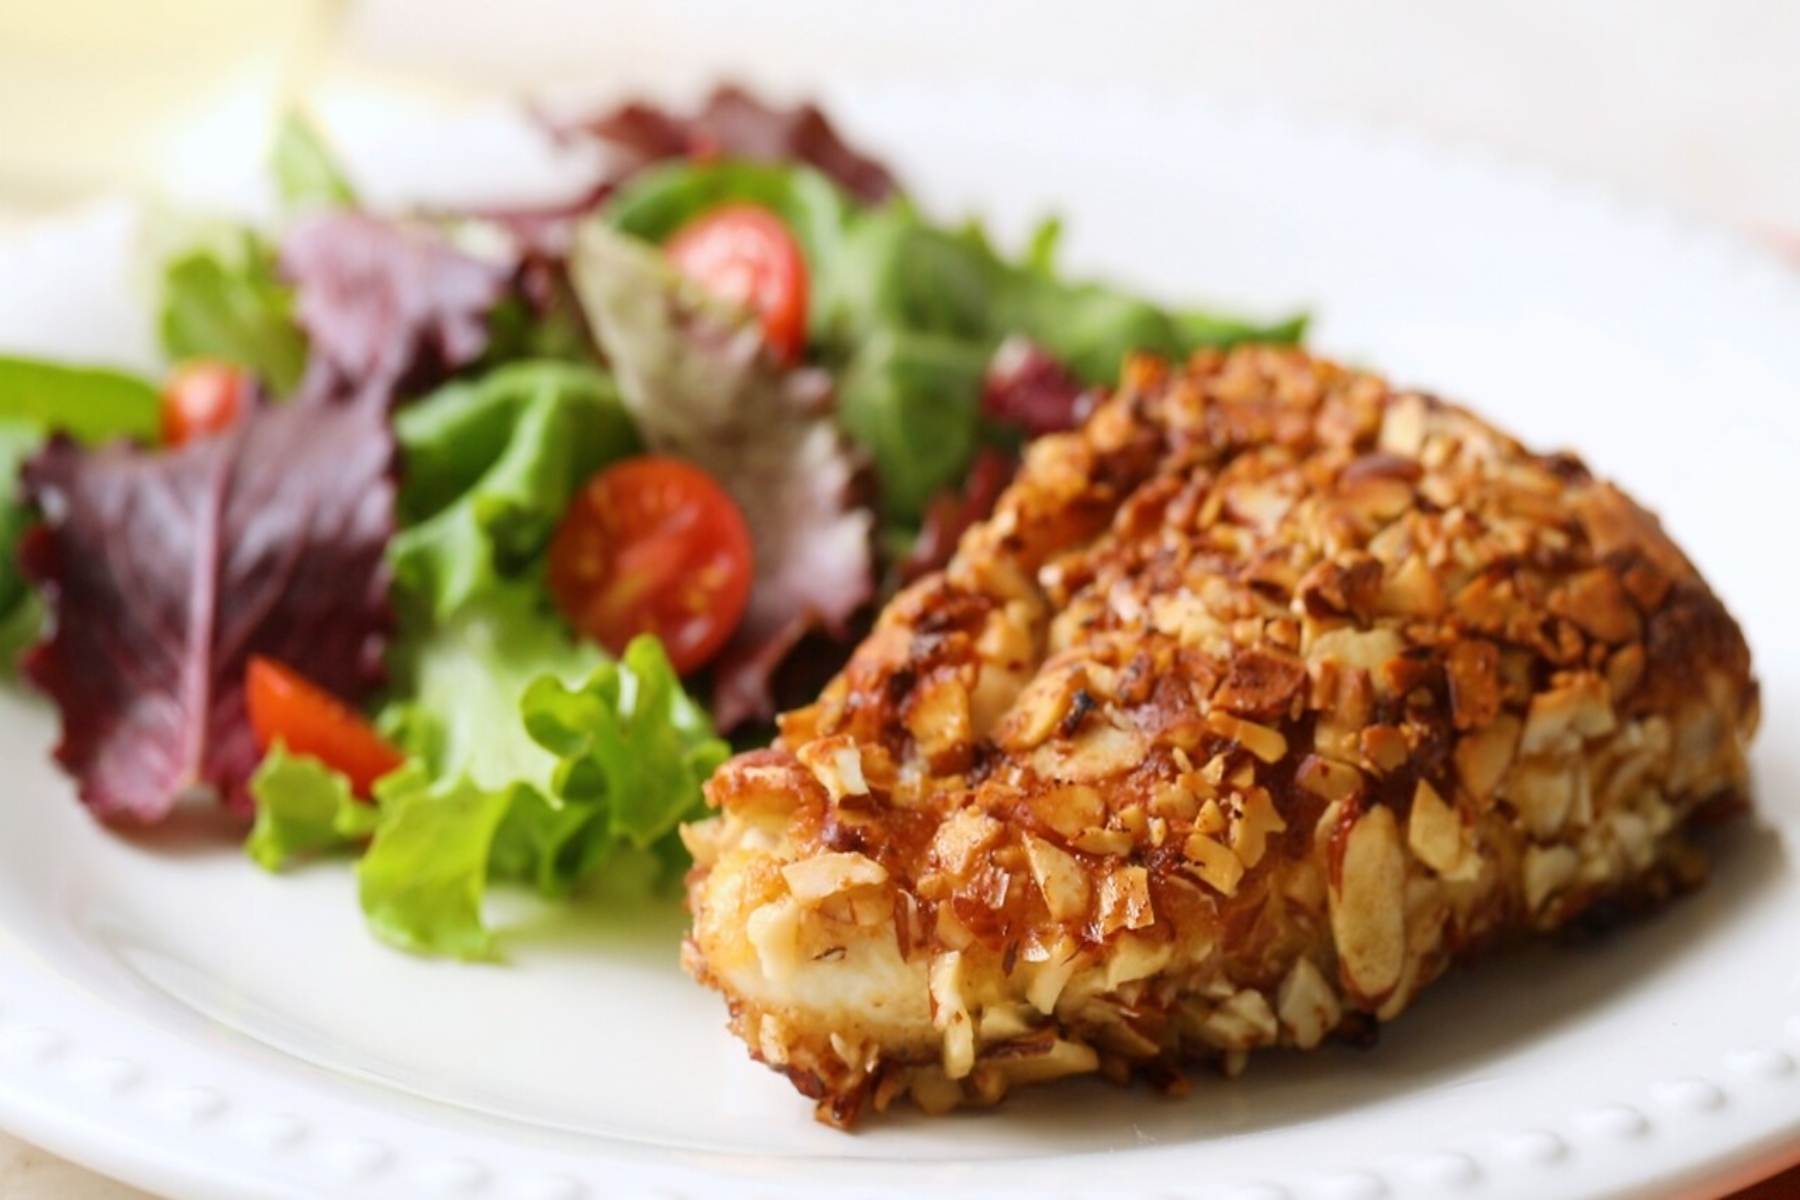 Κοτόπουλο με αμύγδαλο: Μια νόστιμη συνταγή με τραγανό κοτόπουλο που κερδίζει τις εντυπώσεις